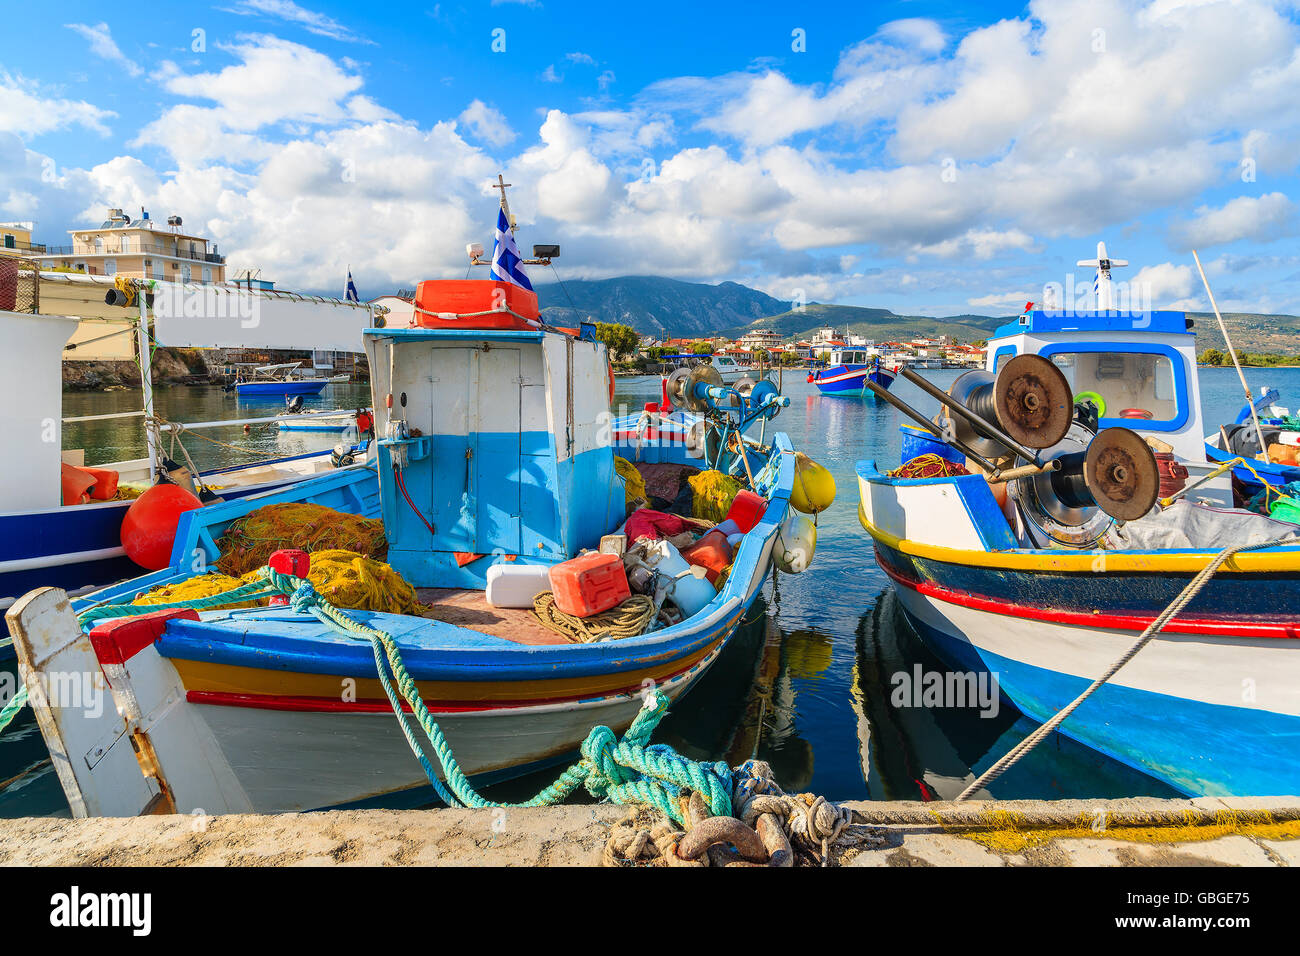 Les bateaux de pêche colorés grec typique de port sur l'île de Samos, Grèce Banque D'Images